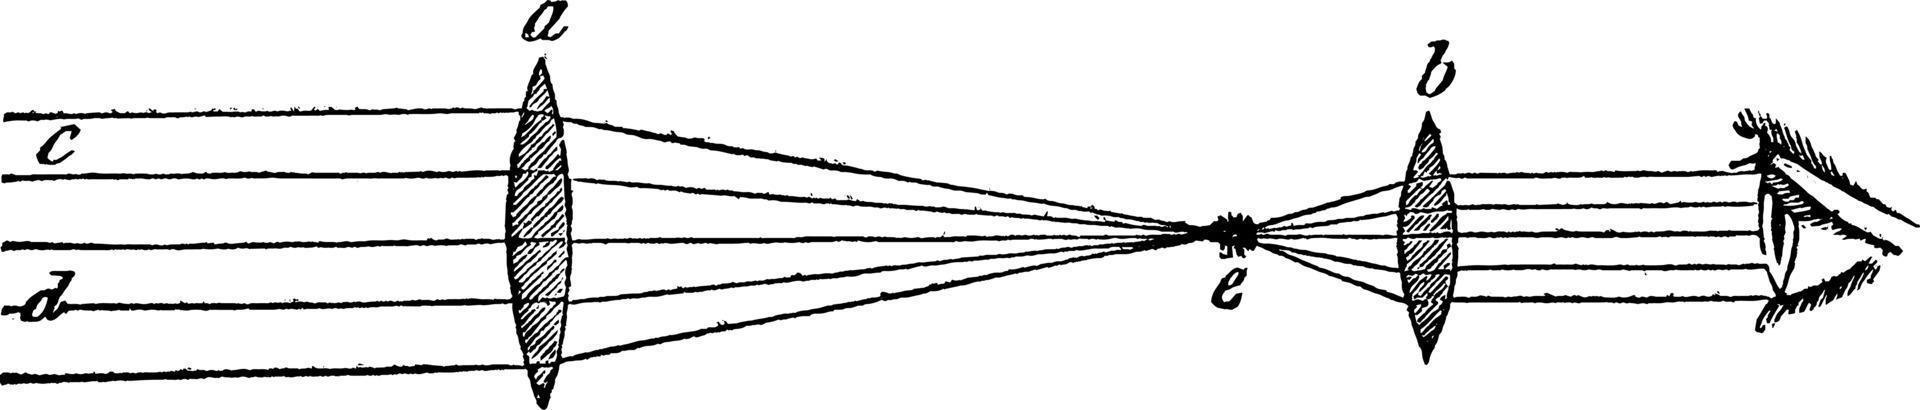 telescopio refractor, ilustración vintage. vector